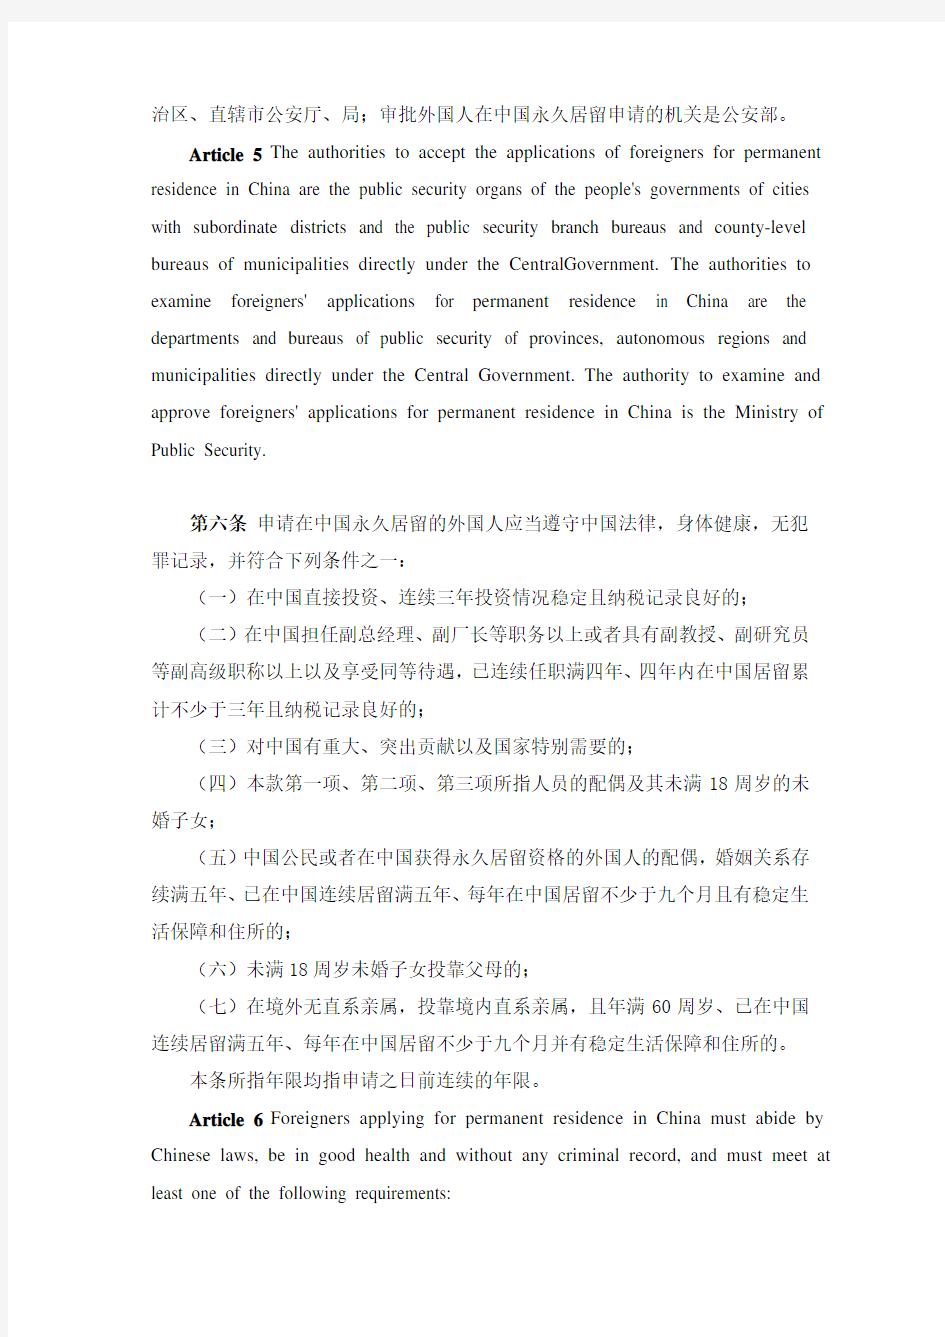 外国人在中国永久居留审批管理办法